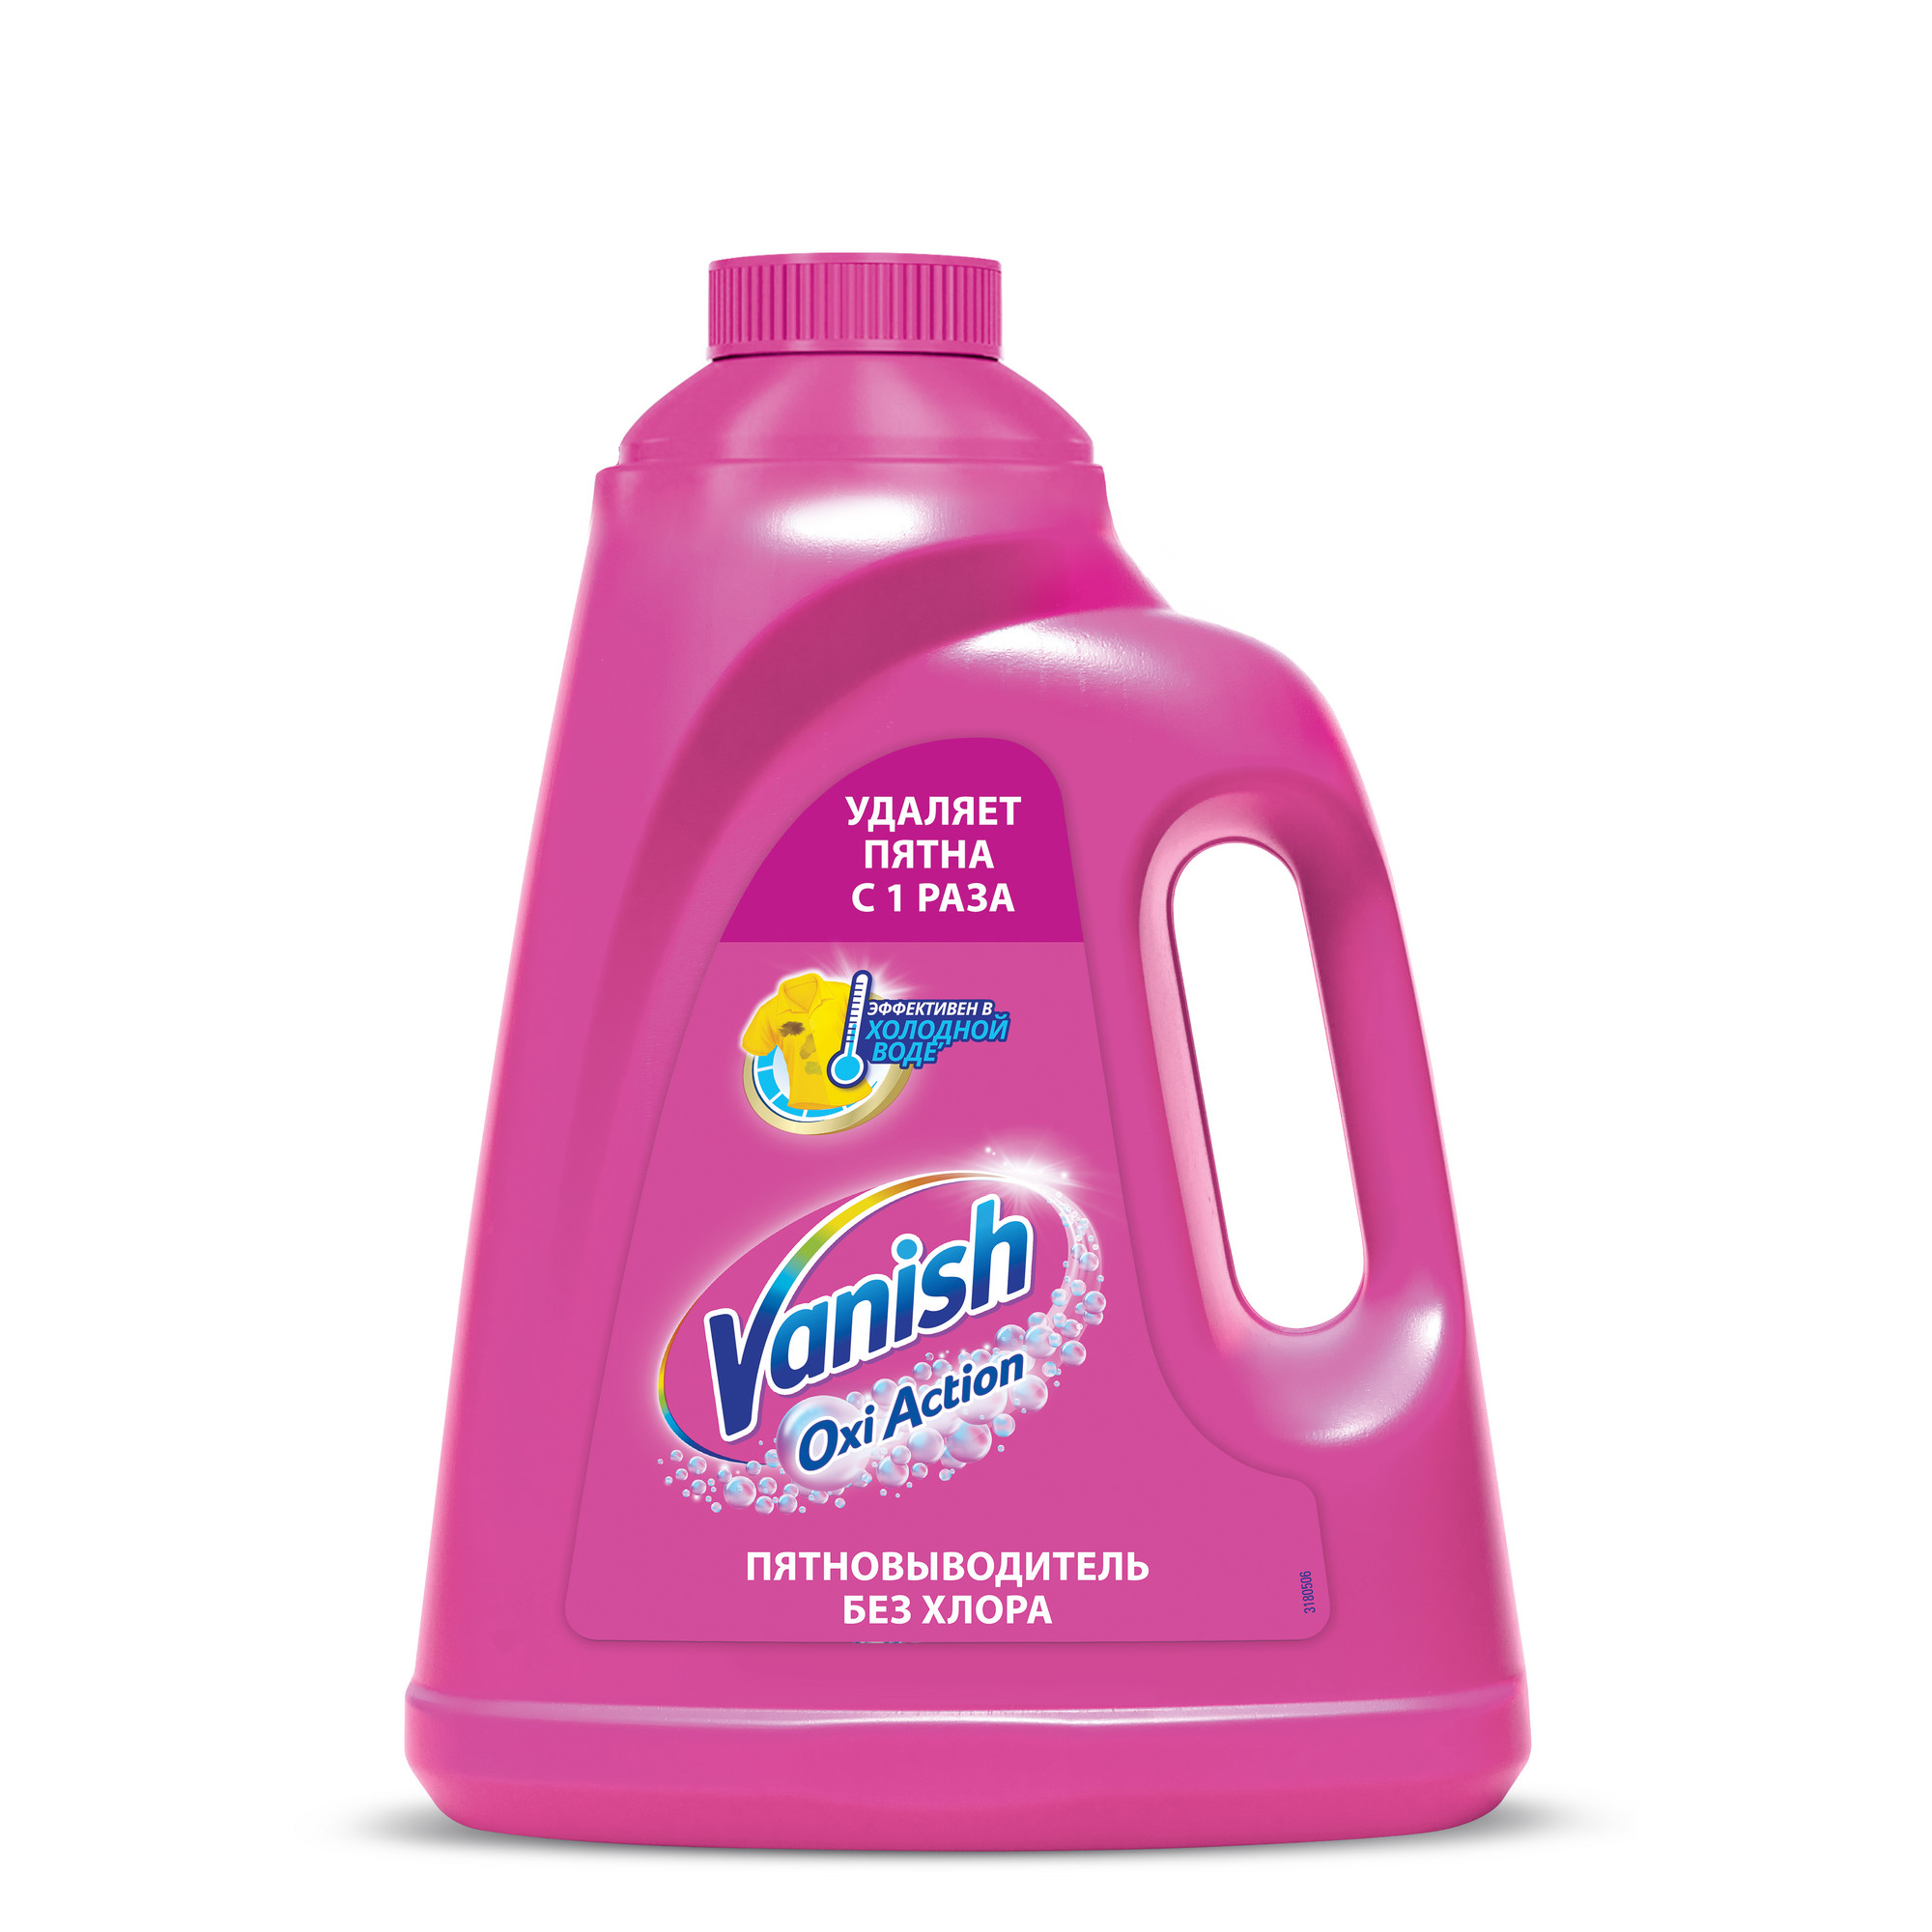 Пятновыводитель Vanish Oxi Action 2 л пятновыводитель vanish для тканей отбеливатель порошкообразный 800 г